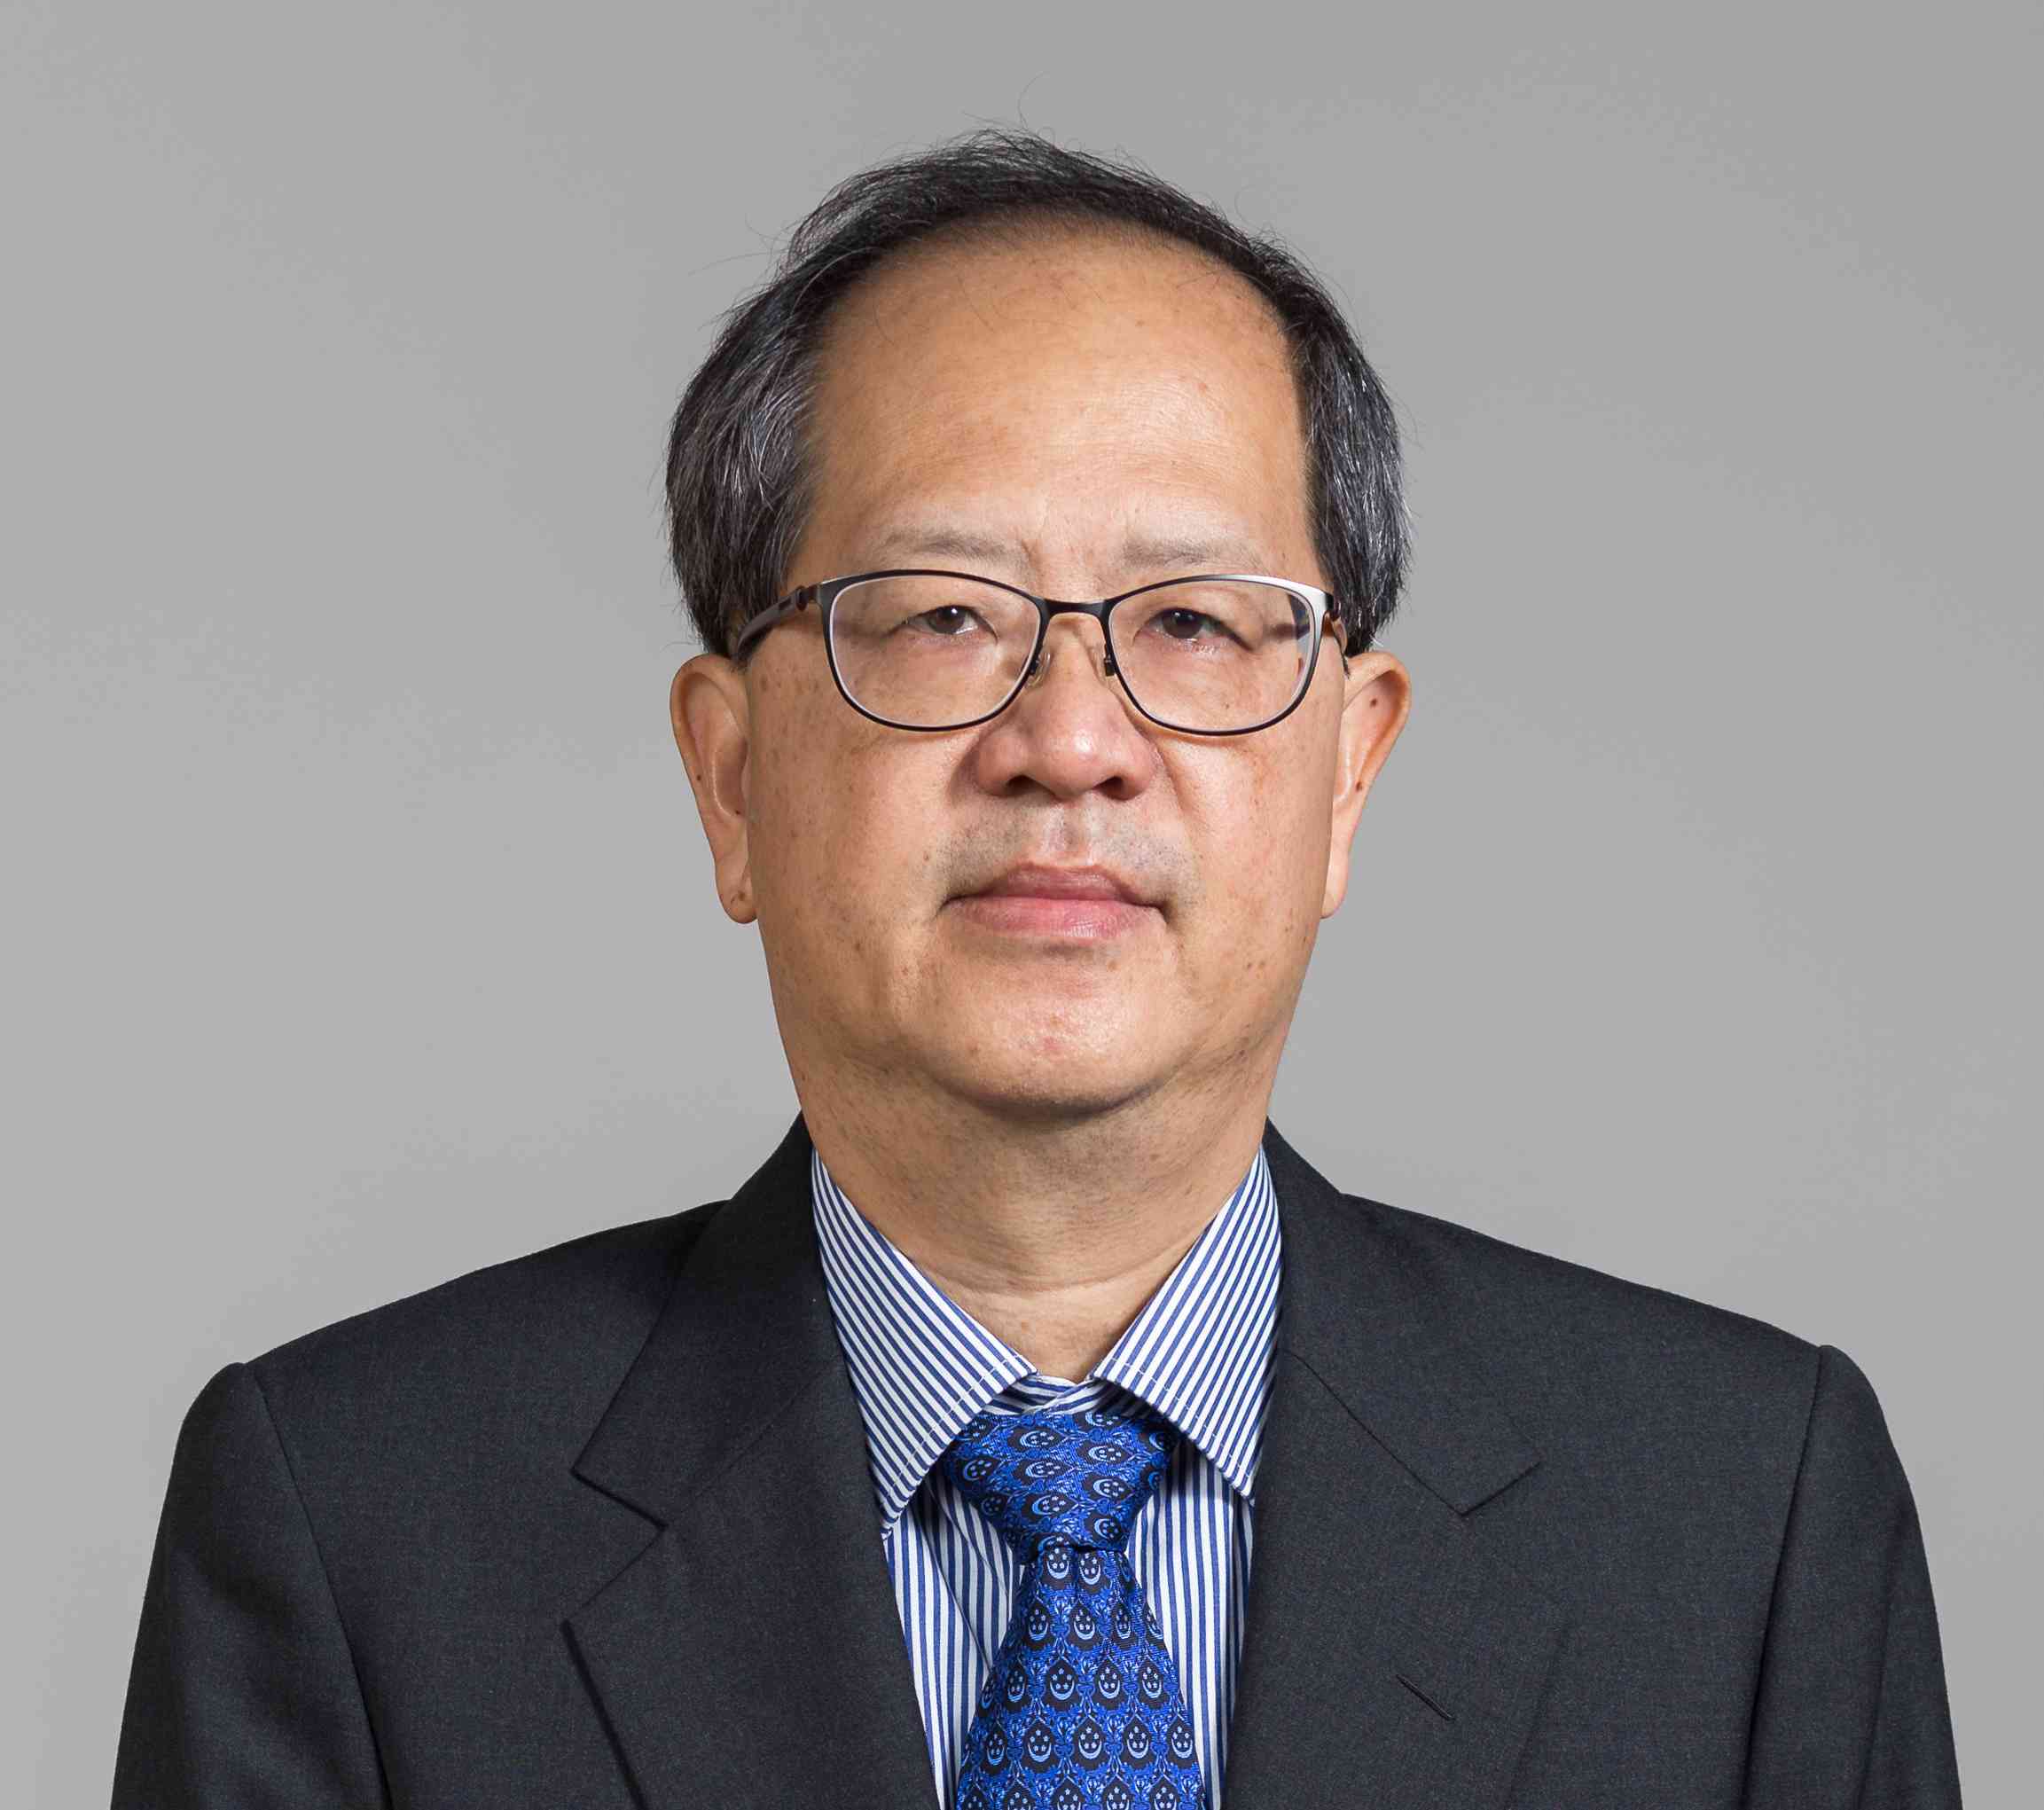 Dr. Teo Yong Meng